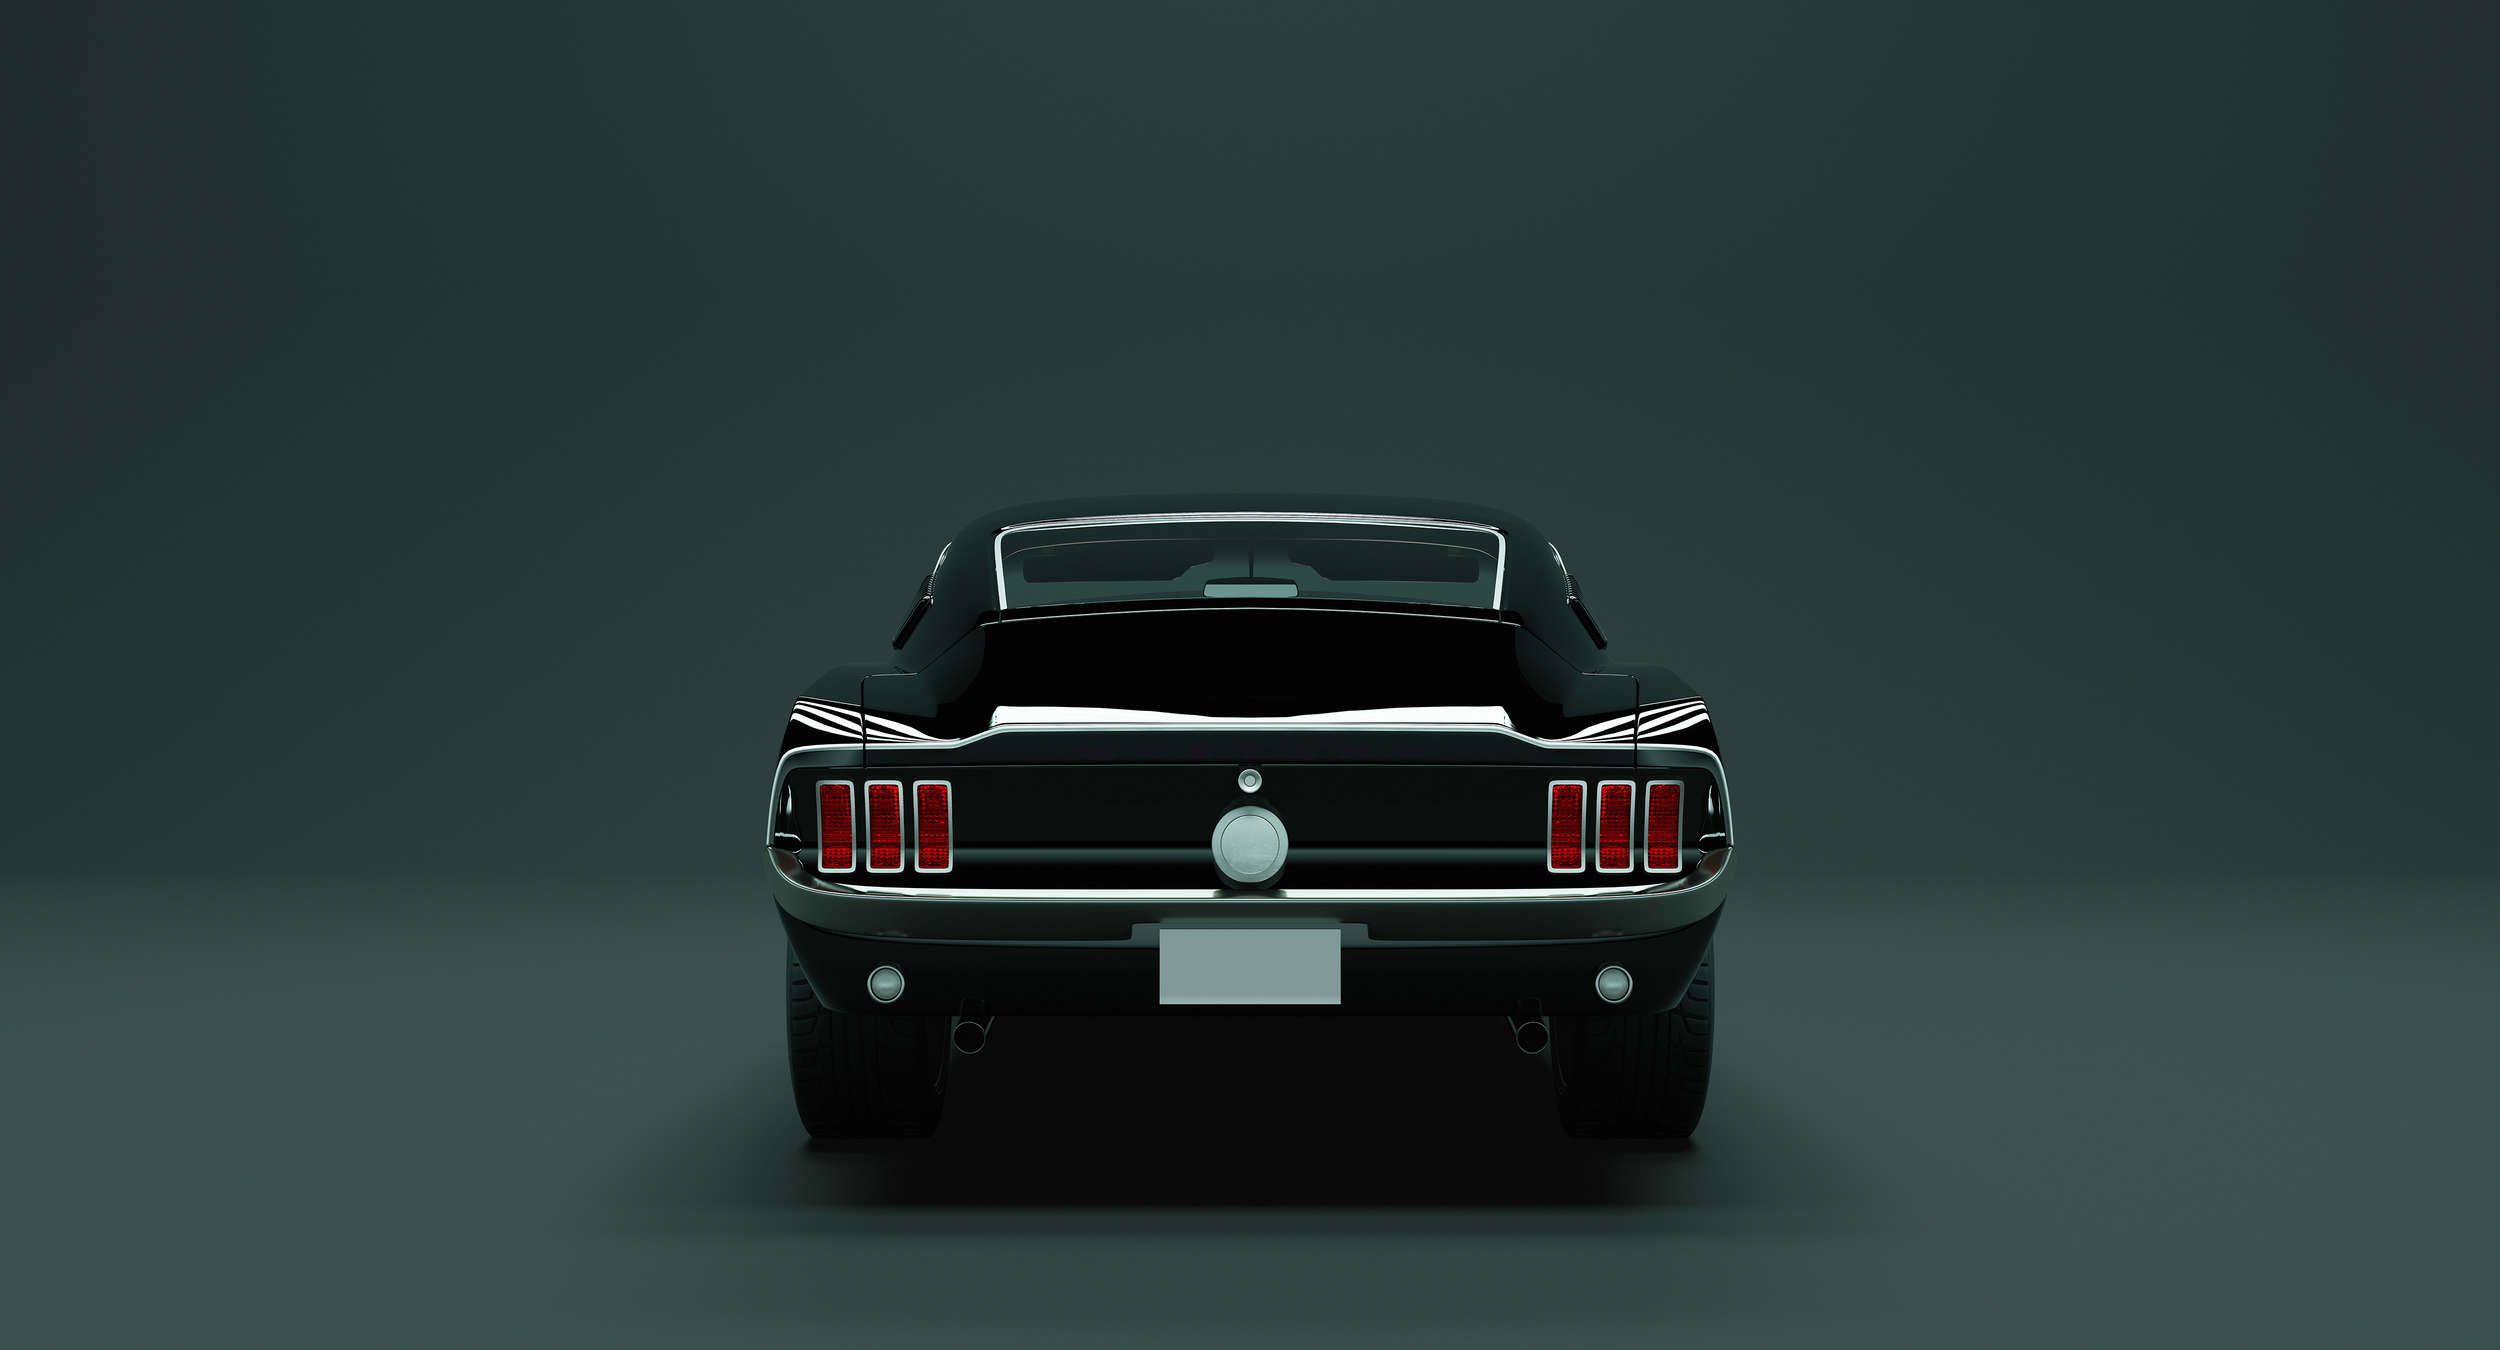             Mustang 3 - American Muscle Car papier peint - bleu, noir | Intissé lisse mat
        